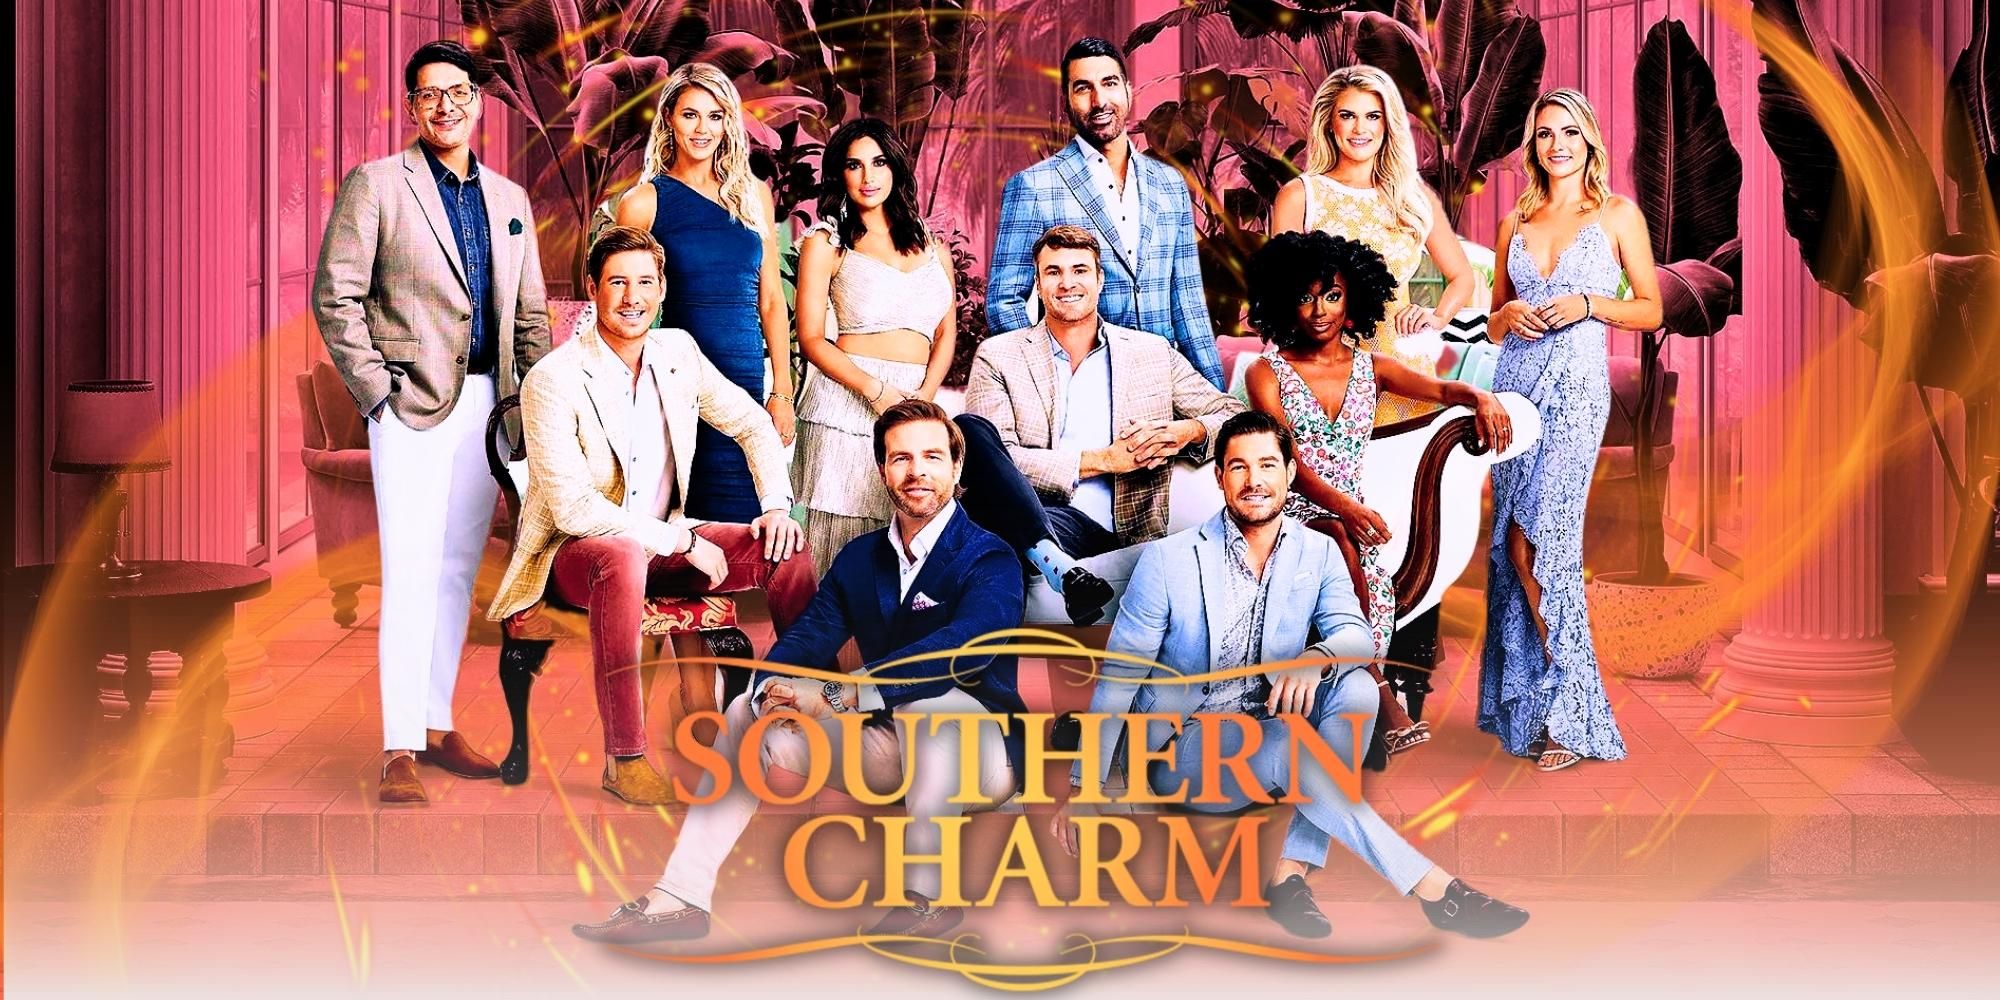 Temporada 10 de Southern Charm: últimas noticias, reparto y todo lo que sabemos